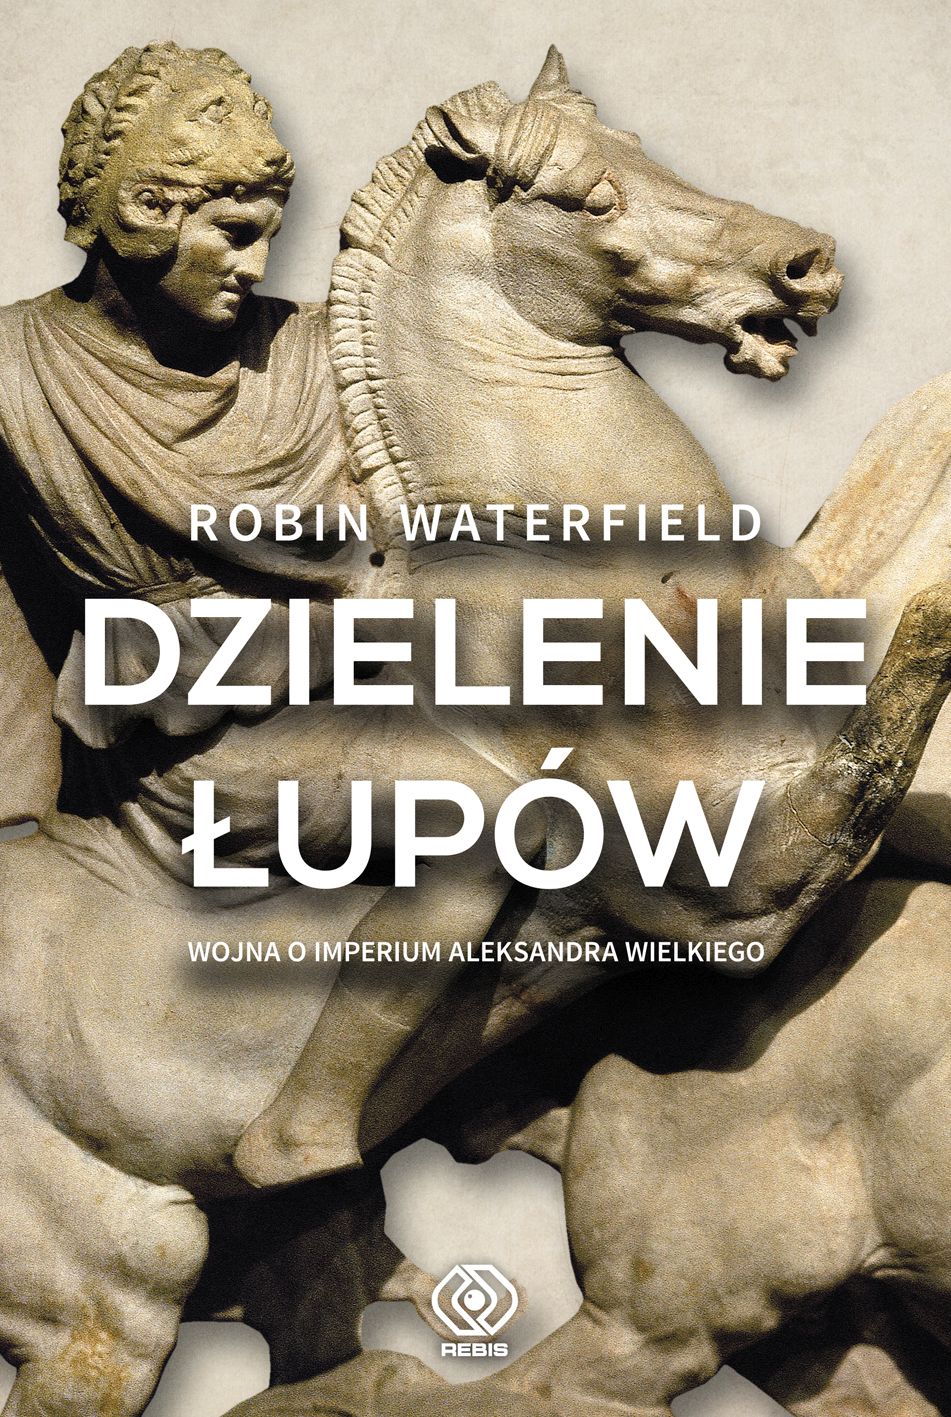 Książka Robina Waterfielda "Dzielenie łupów. Wojna o Imperium Aleksandra Wielkiego"